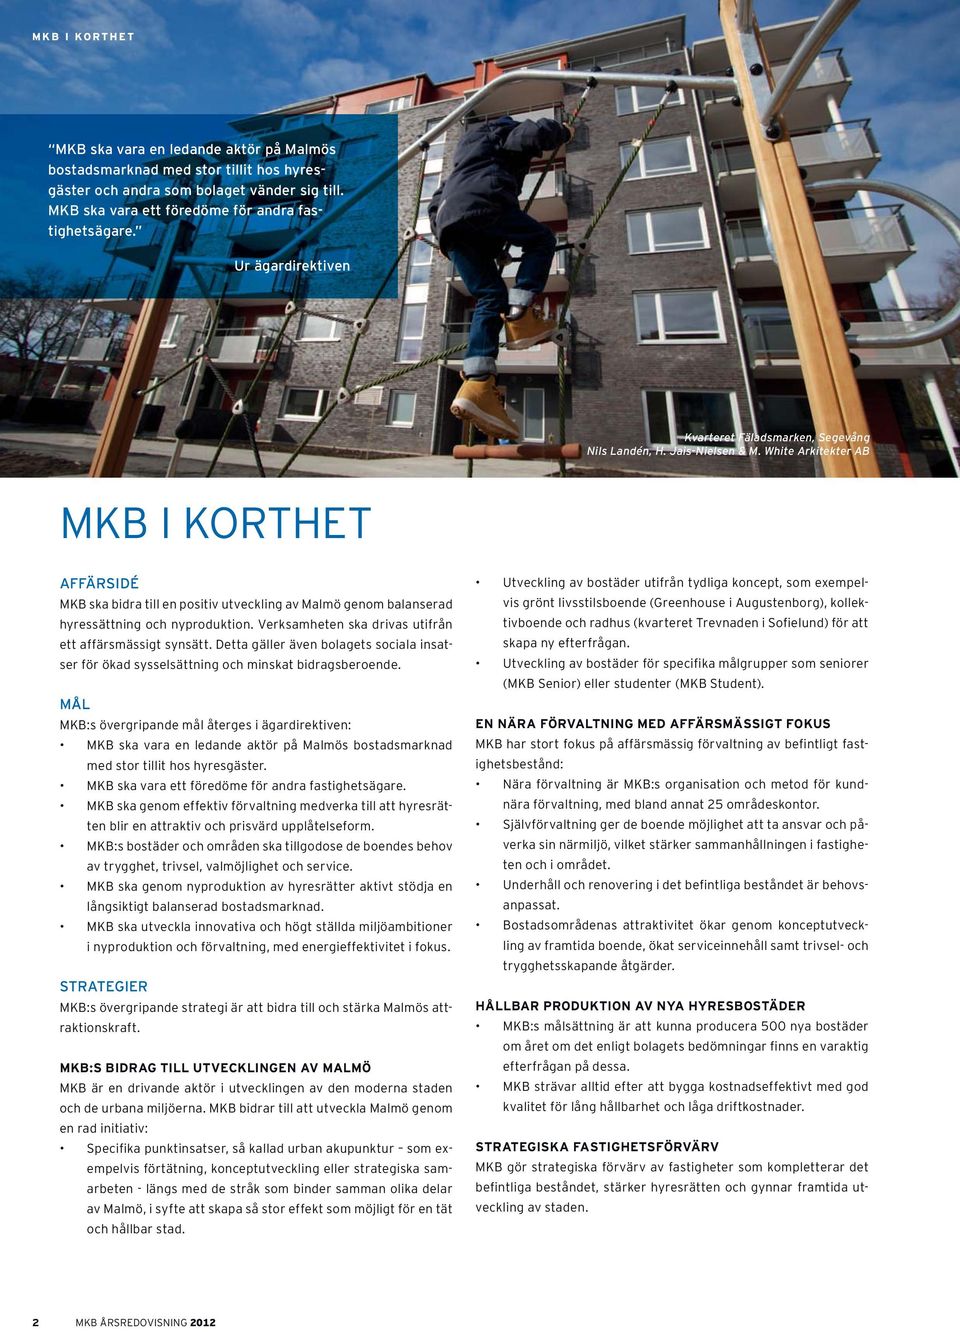 White Arkitekter AB MKB I KORTHET AFFÄRSIDÉ MKB ska bidra till en positiv utveckling av Malmö genom balanserad hyressättning och nyproduktion.